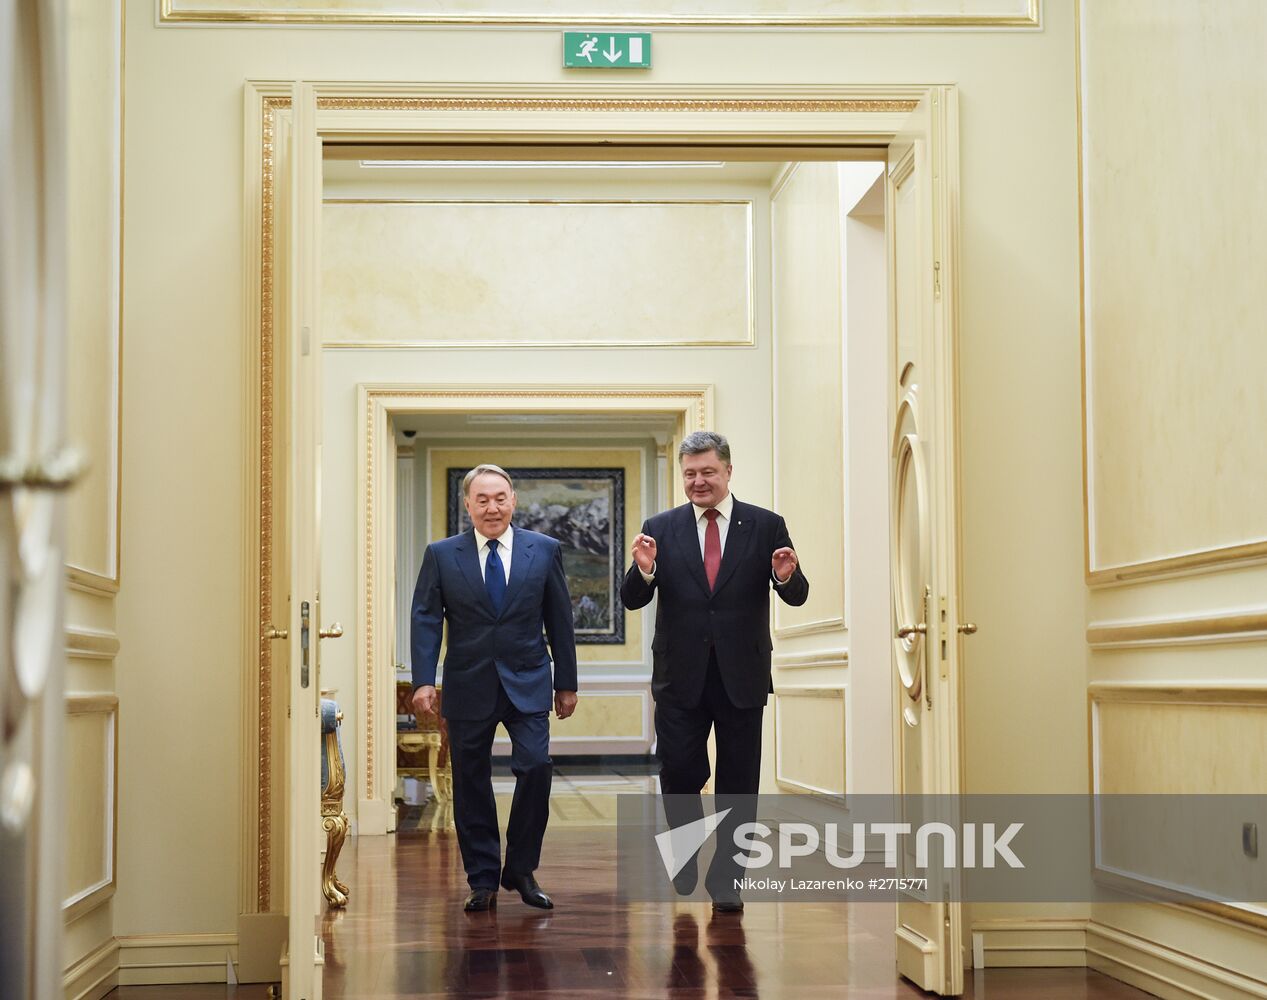 Meeting of Nazarbayev and Poroshenko in Astana